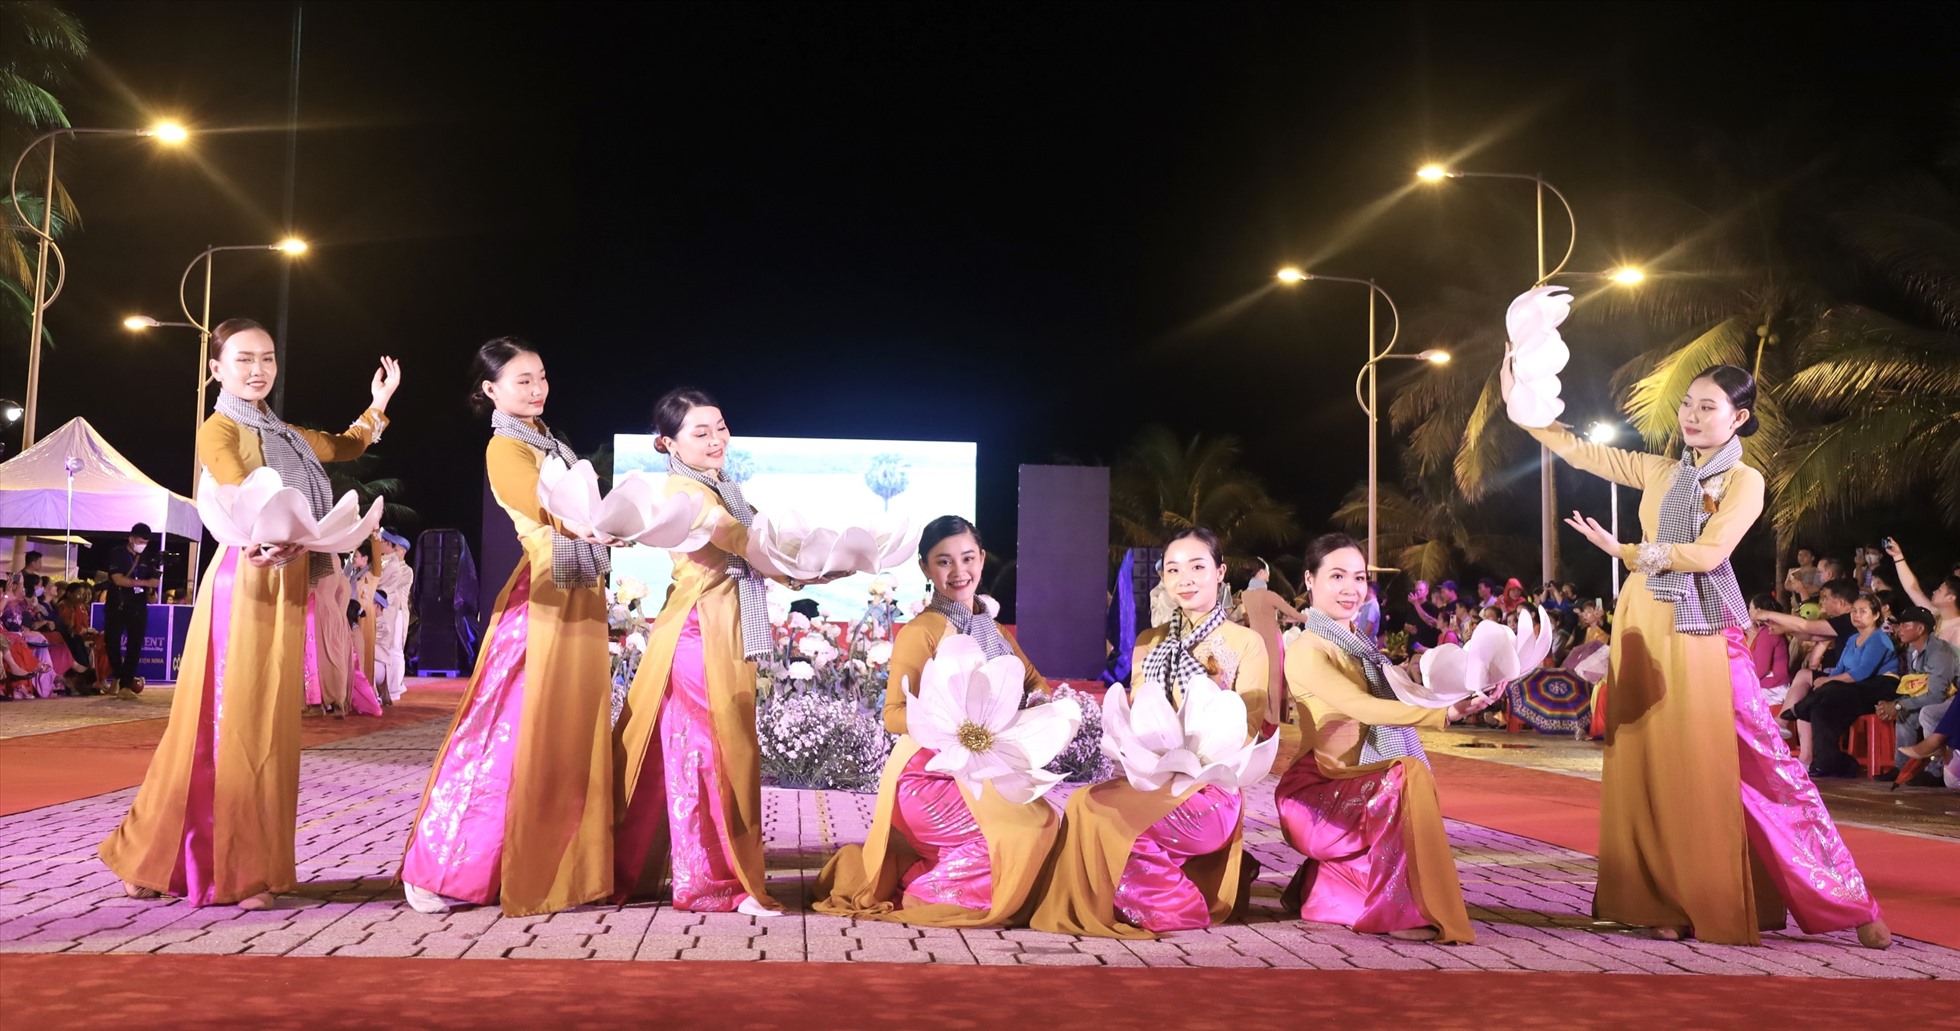 Âm nhạc và múa phụ họa tạo thêm đặc sắc cho lễ hội áo dài. Ảnh: Phương Linh